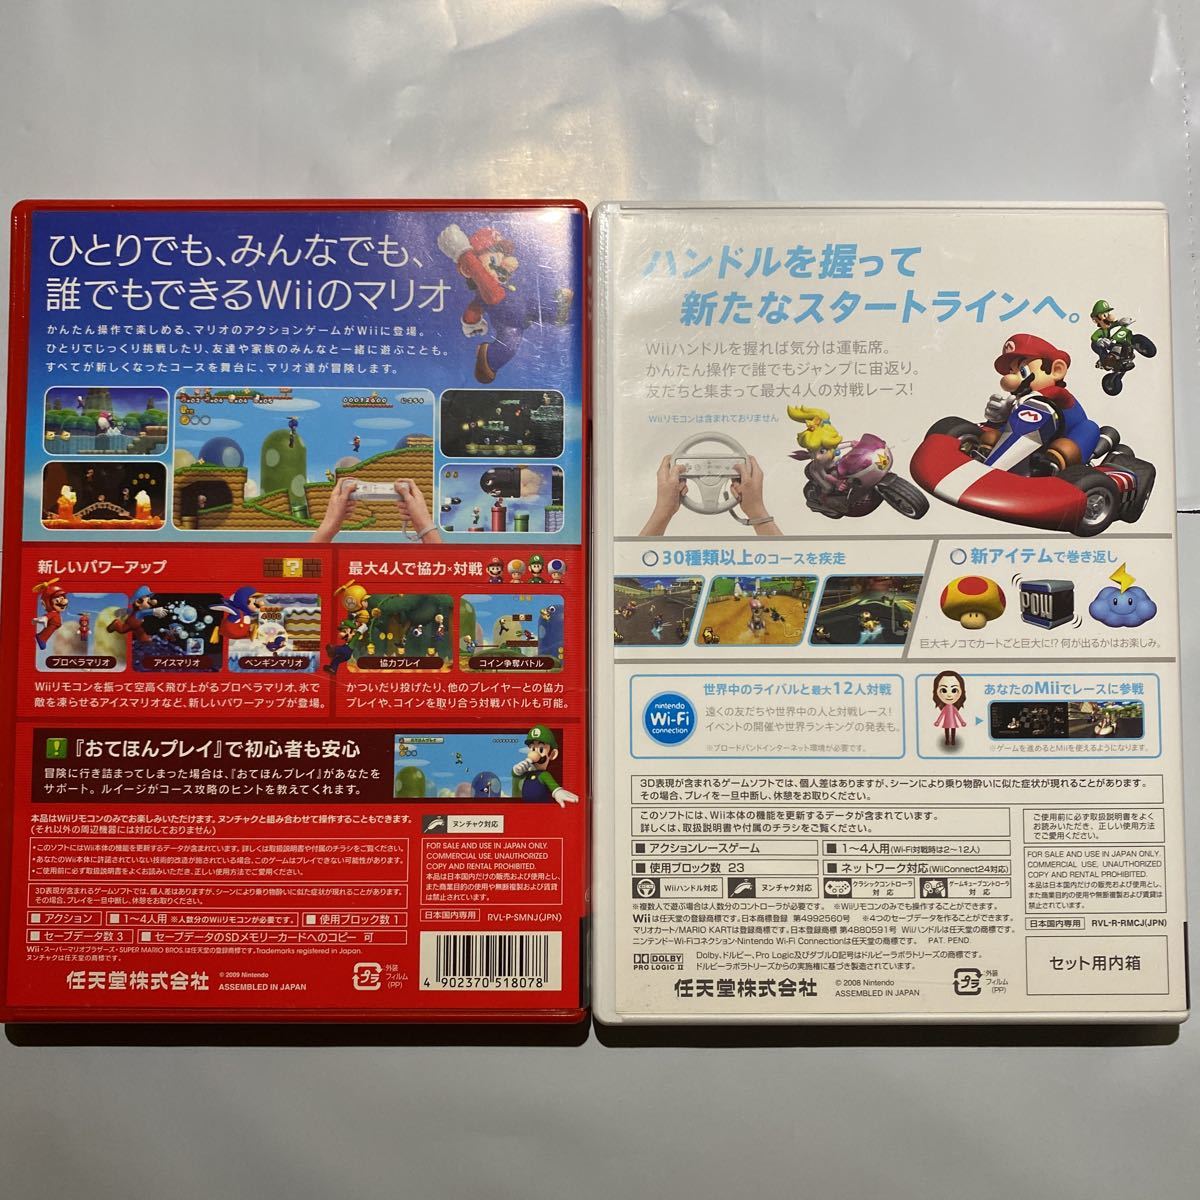 Wii ニュースーパーマリオブラザーズWii マリオカートWii